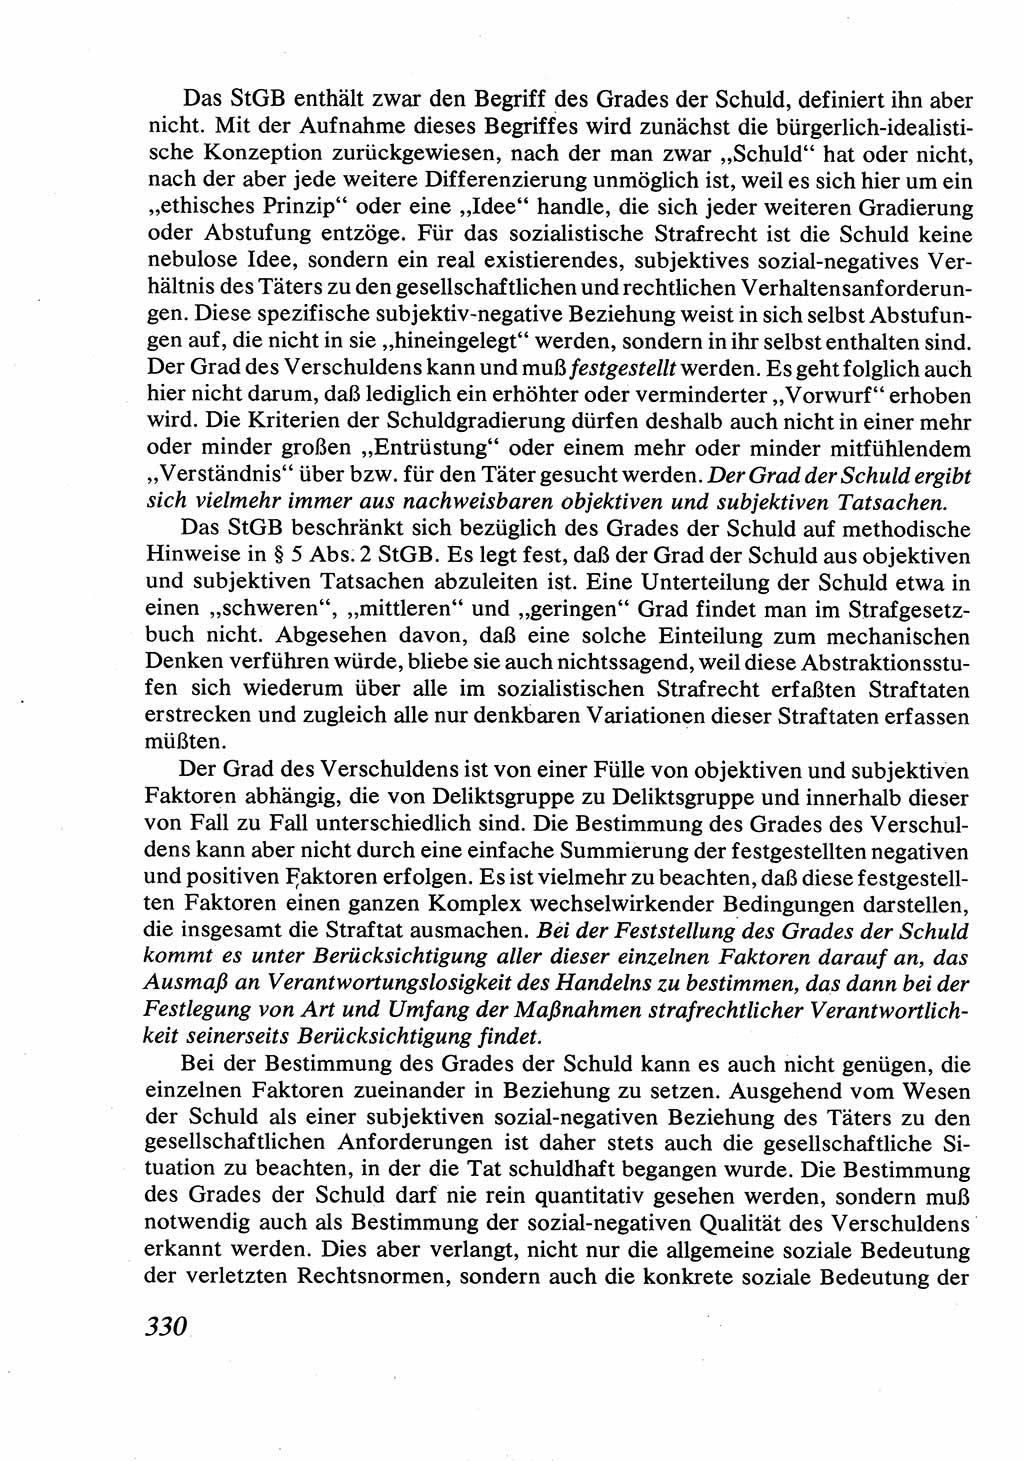 Strafrecht [Deutsche Demokratische Republik (DDR)], Allgemeiner Teil, Lehrbuch 1976, Seite 330 (Strafr. DDR AT Lb. 1976, S. 330)